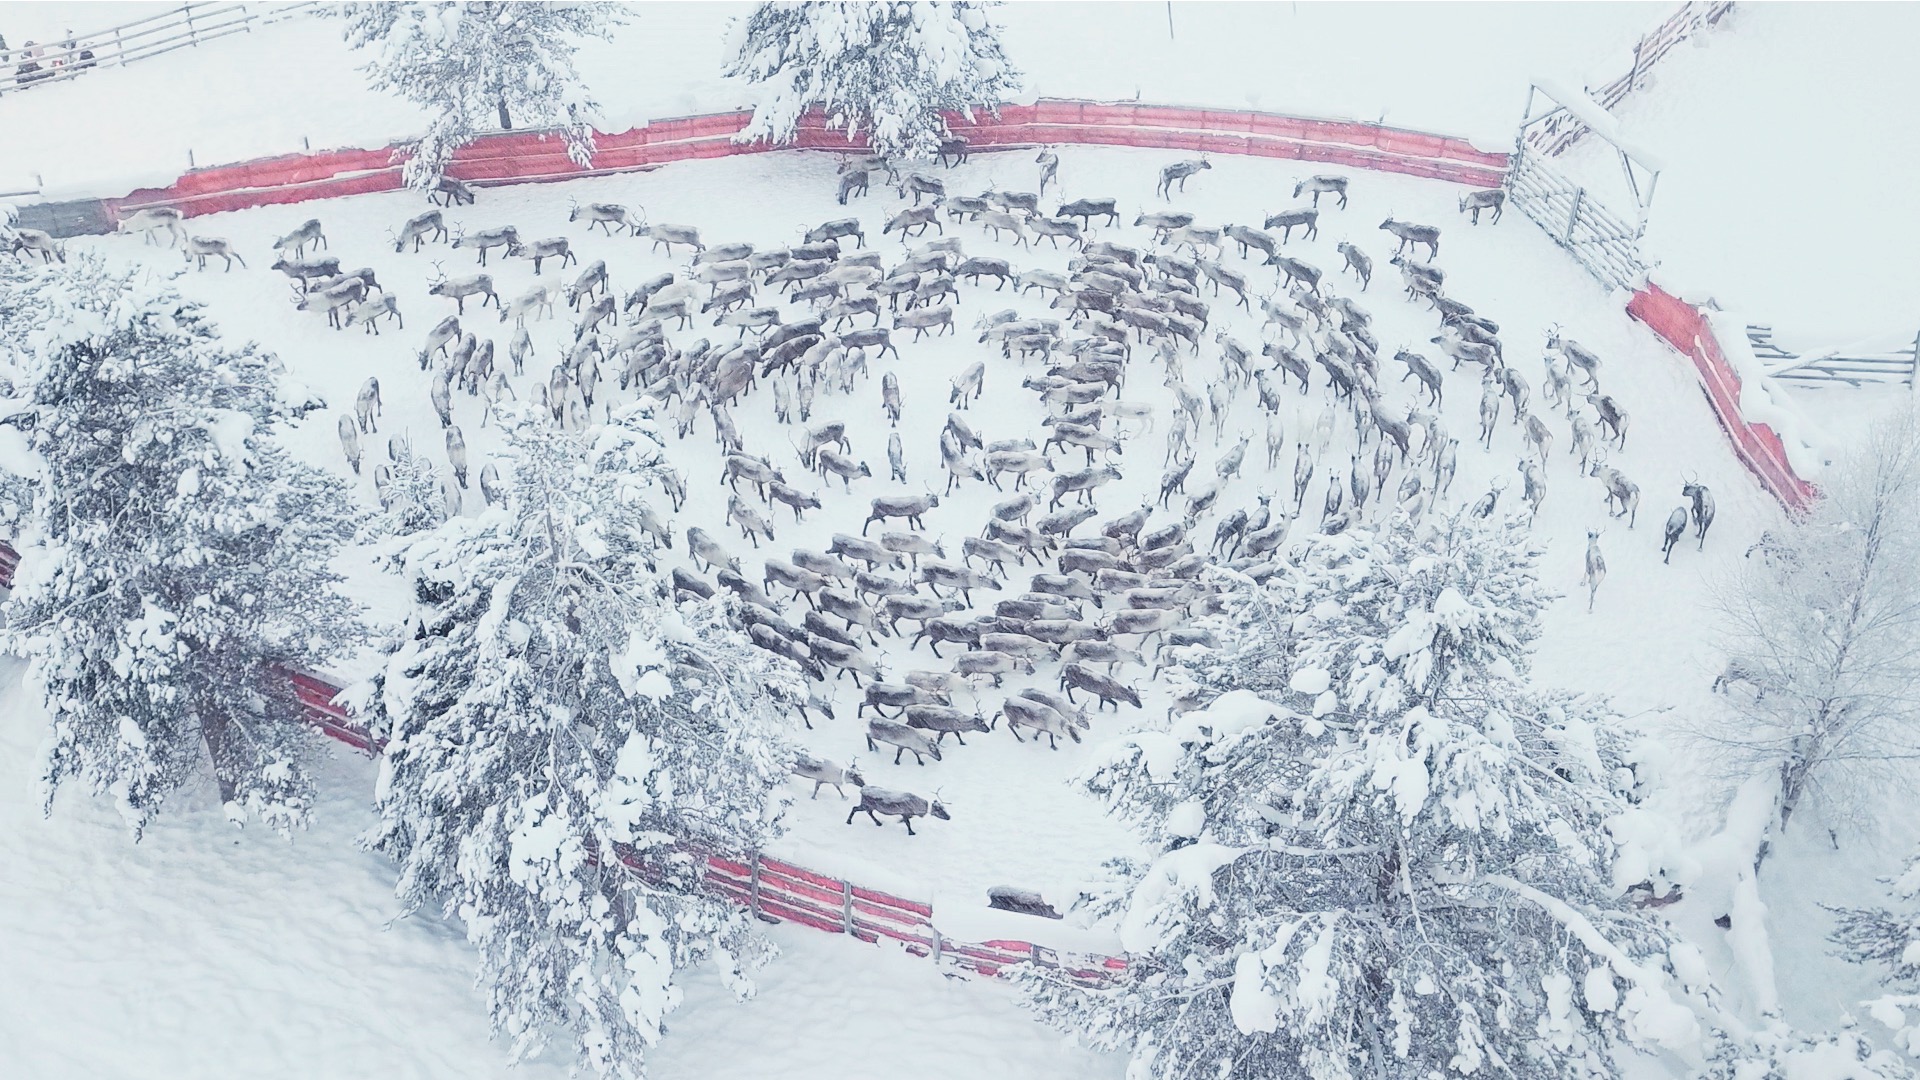 Winter reindeer separation, Jåhkågasska Samebí, Swedish Sápmi, 2018